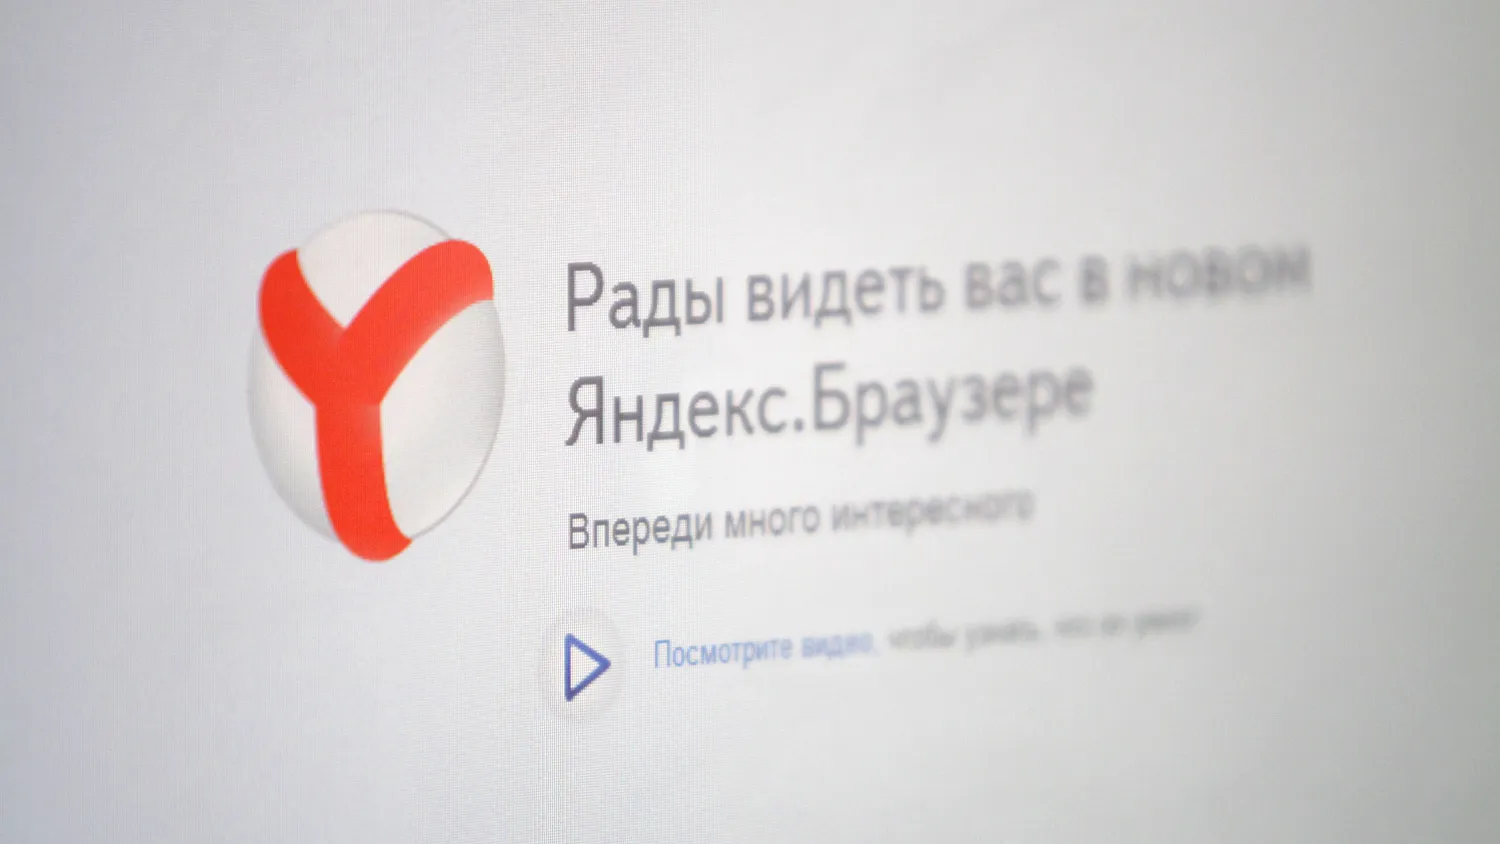 Мобильная версия «Яндекс.Браузера» выйдет в июне